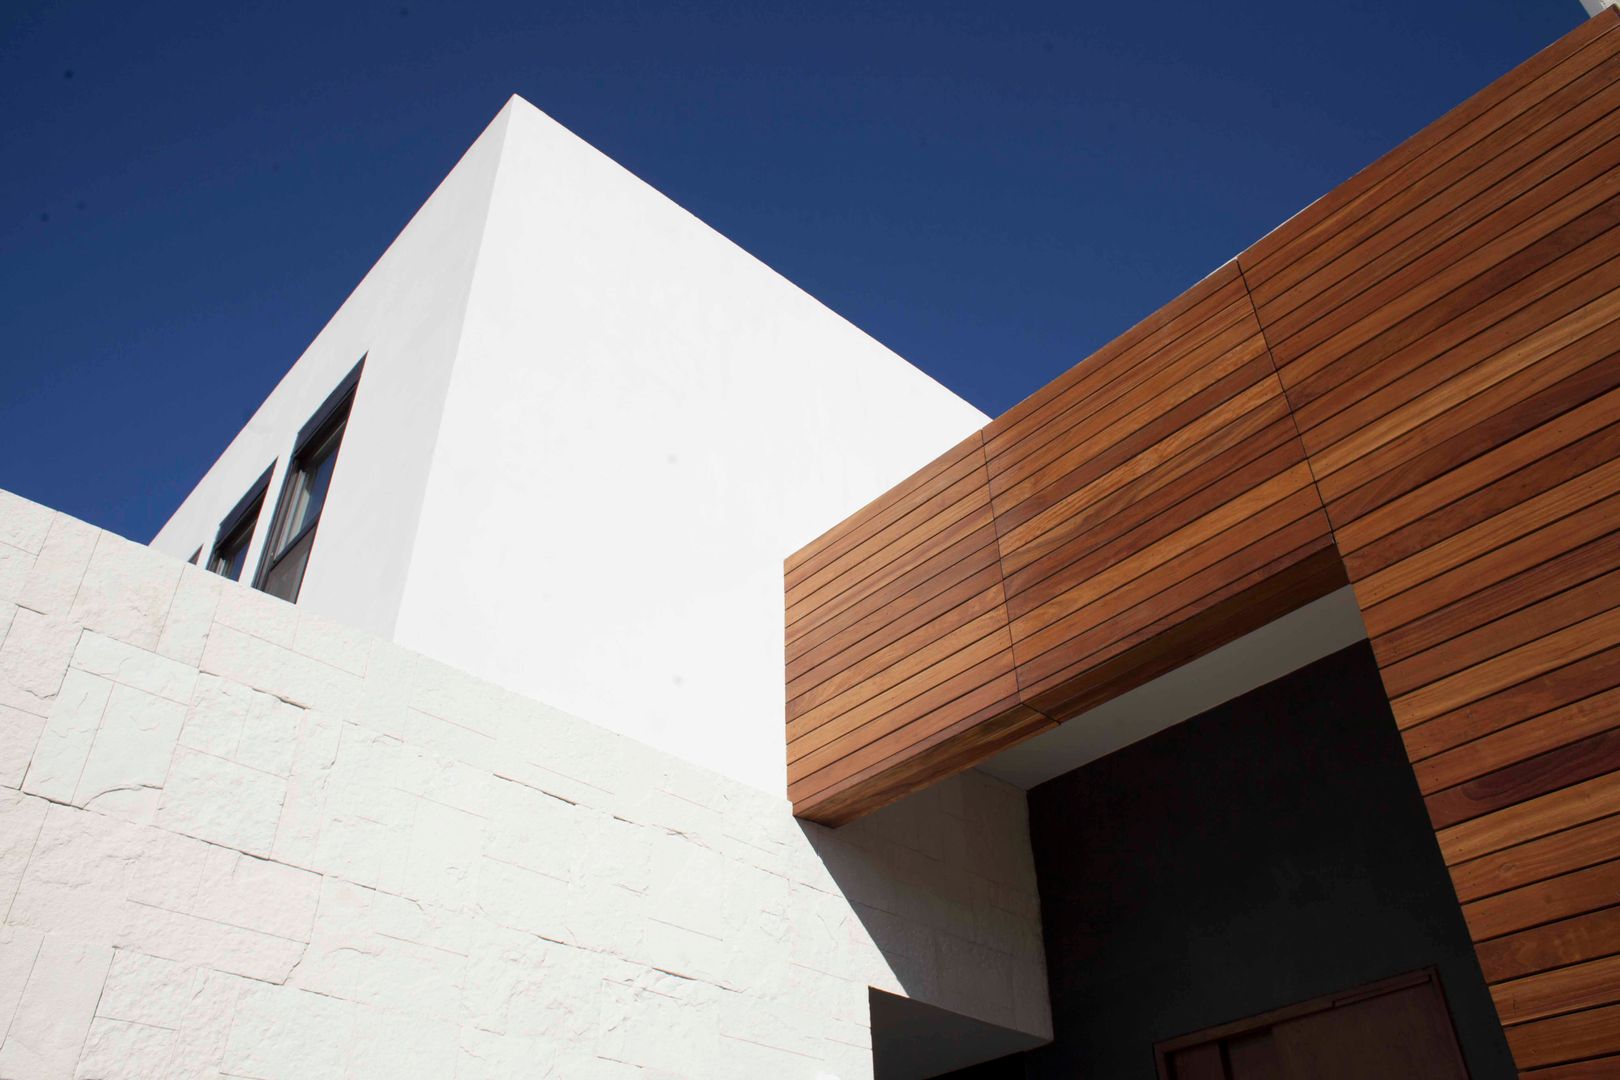 Detalle de madera natural en fachada Toyka Arquitectura Casas modernas: Ideas, diseños y decoración Madera Acabado en madera